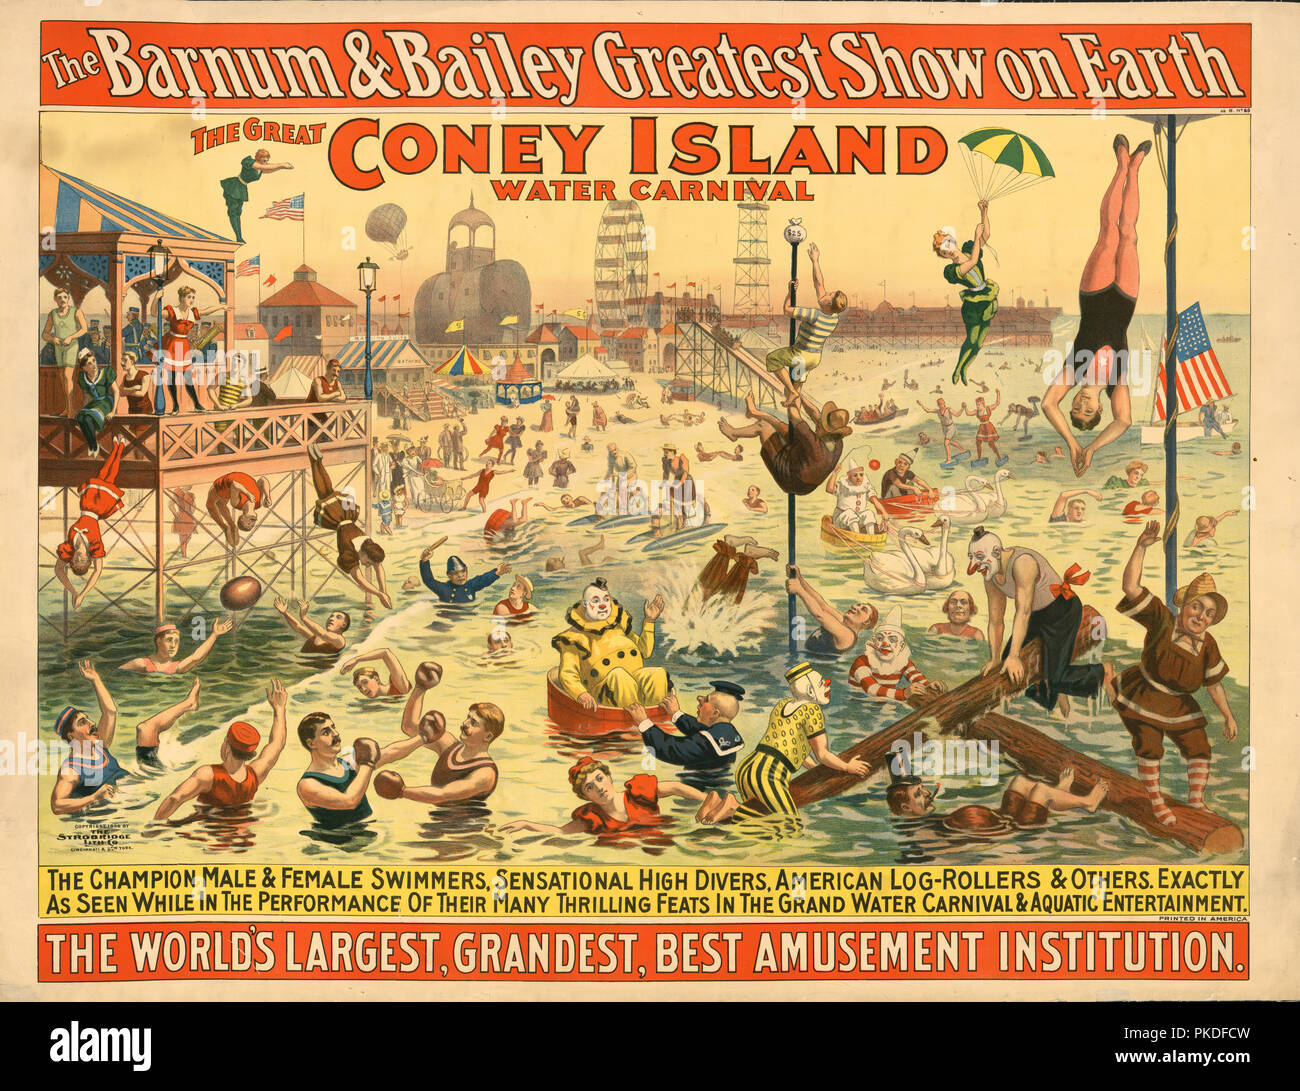 El Barnum & Bailey mayor espectáculo de la Tierra el gran Carnaval de agua de Coney Island. Cartel muestra personas en trajes, incluidos los payasos, actuando en la playa. Foto de stock